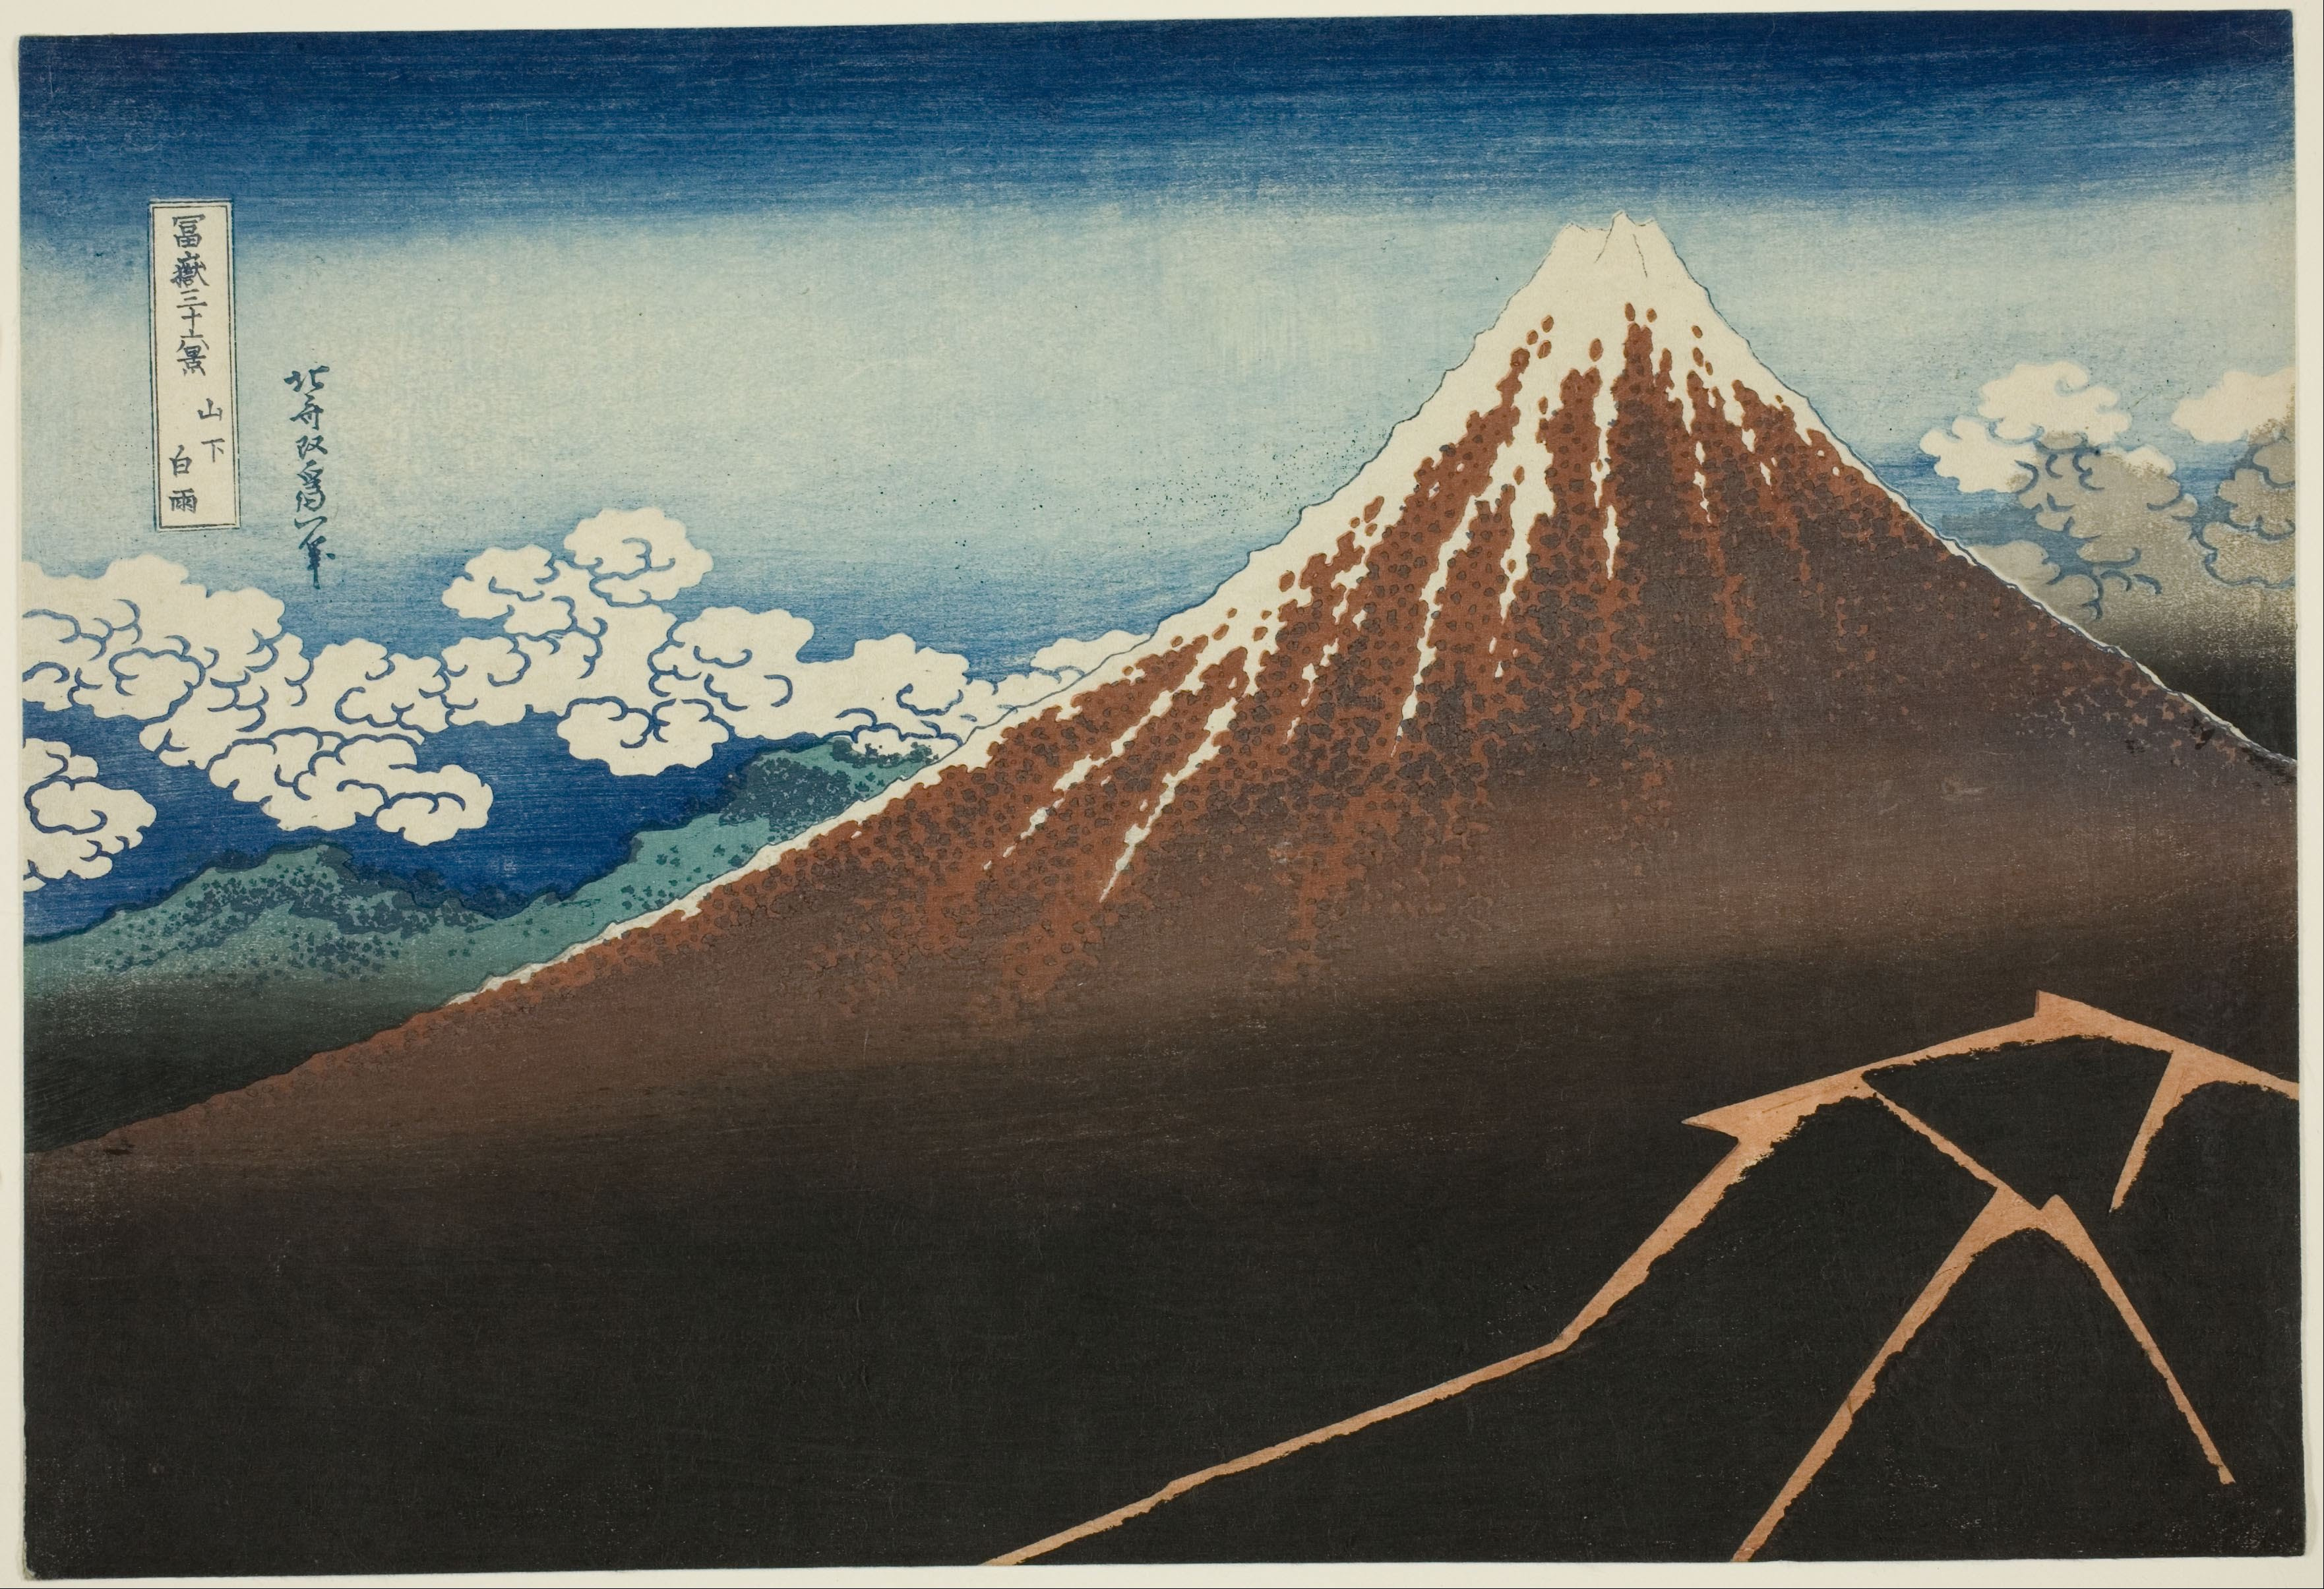 산 기슭의 소나기 by Katsushika Hokusai - 1830-32년경 - 10 1/8 × 14 9/16 인치 